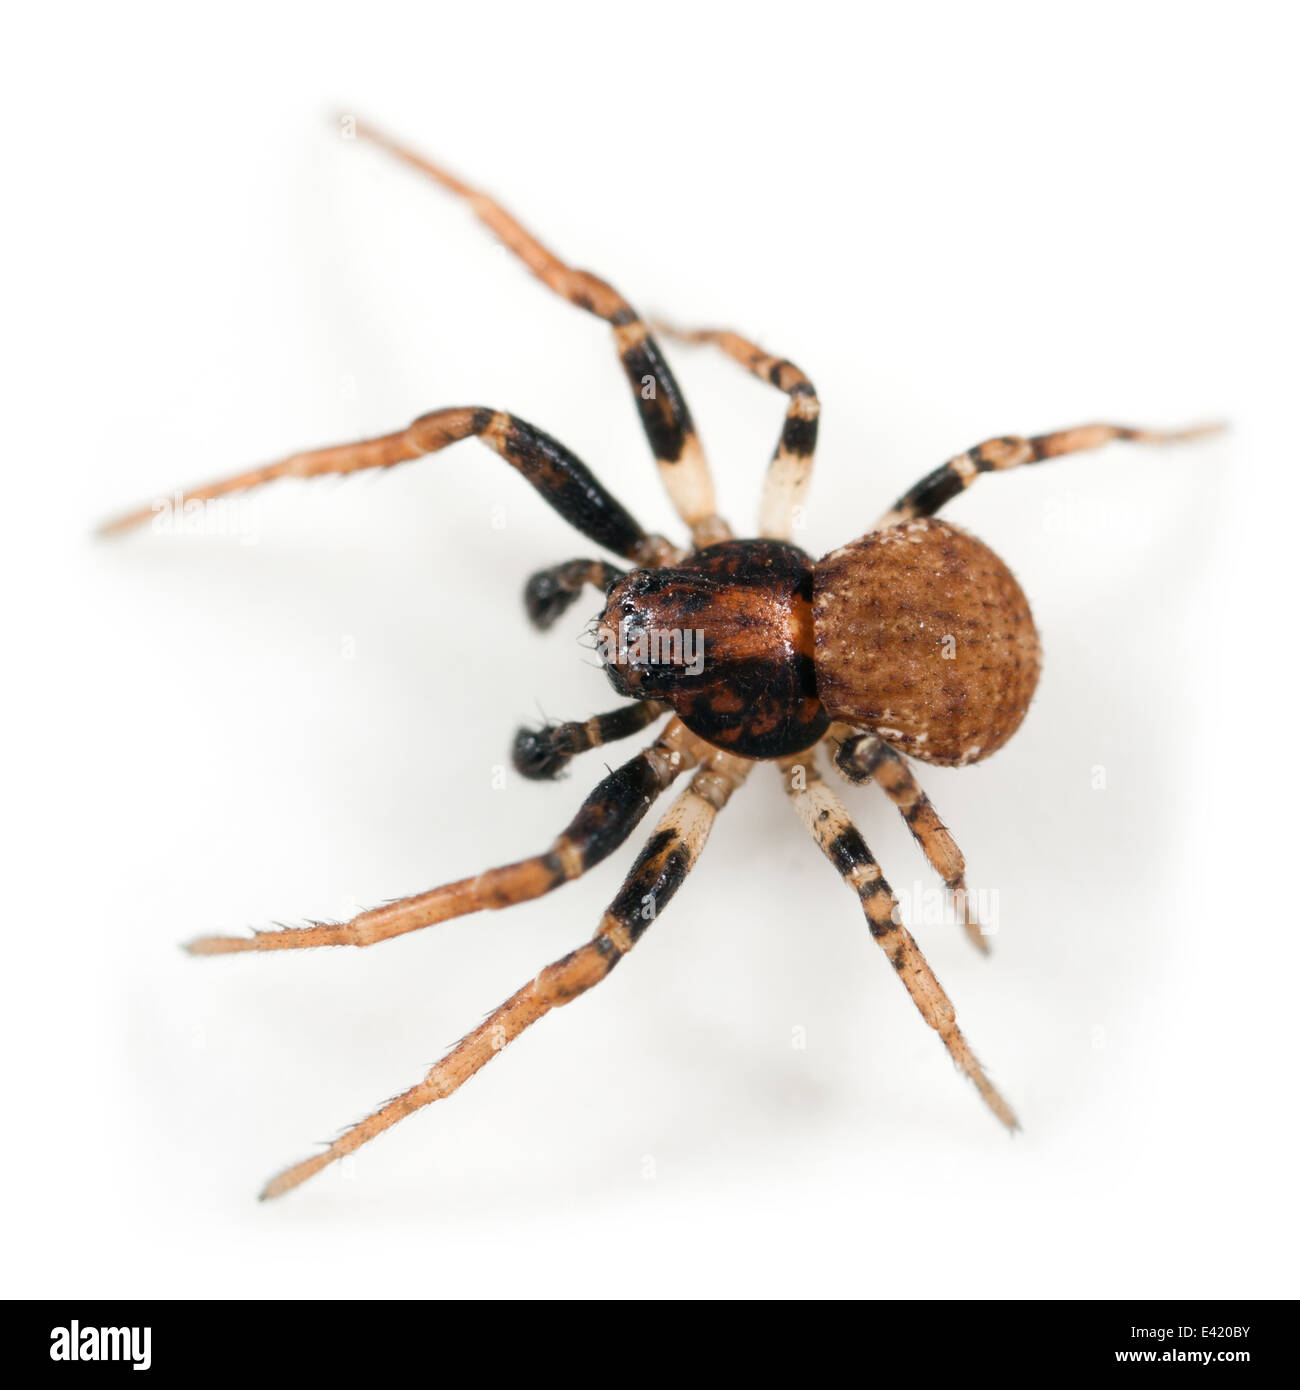 Männliche Ozyptila Praticola Spinne, Teil der Familie Thomisidae - Krabben Spinnen. Isoliert auf weißem Hintergrund. Stockfoto